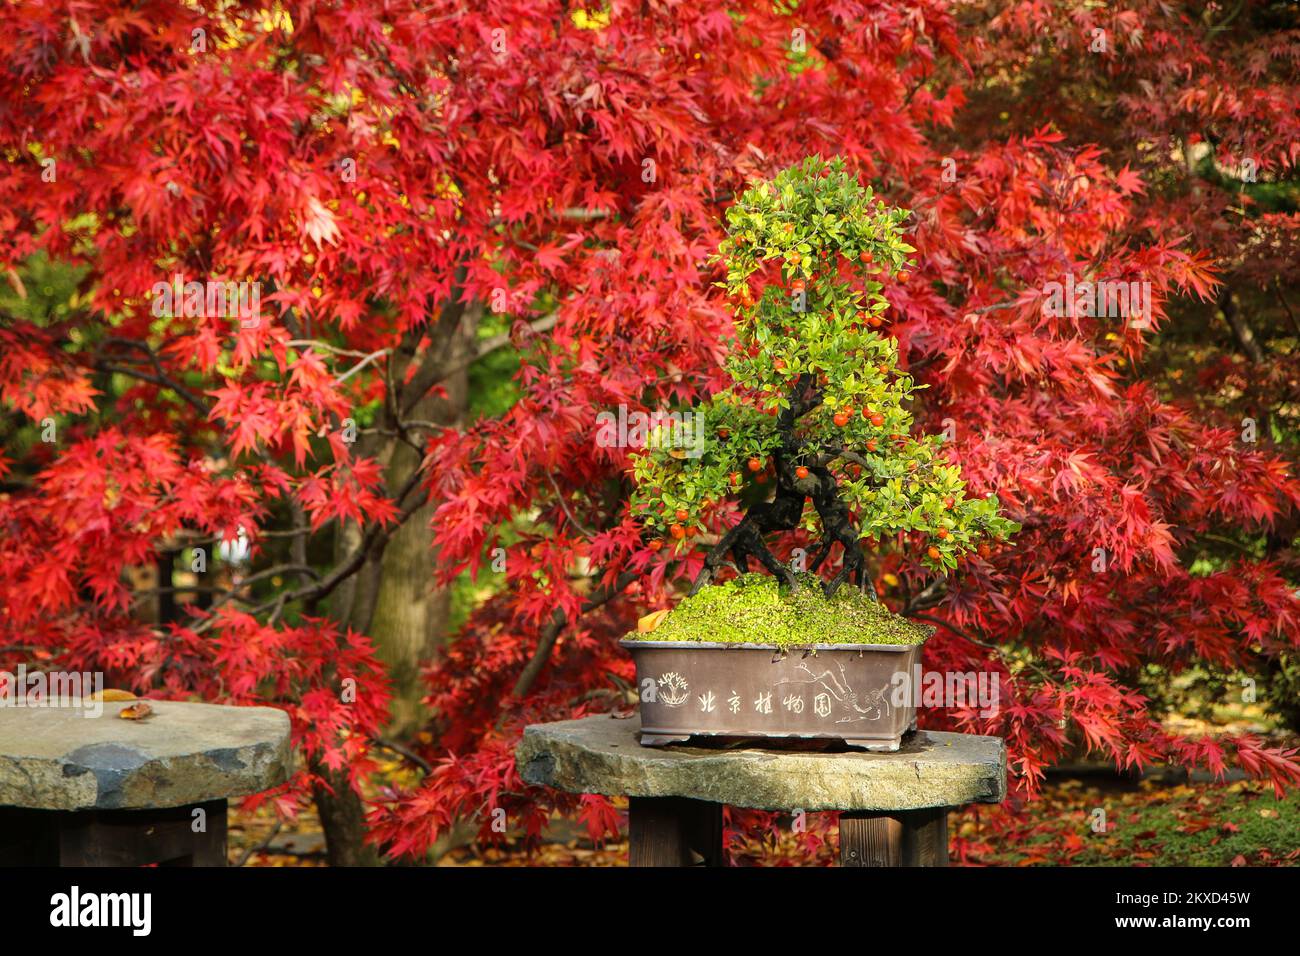 Le bonsaï vert debout dans le jardin contre les feuilles rouges d'un arbre. Le joli contraste d'automne du feuillage. Banque D'Images